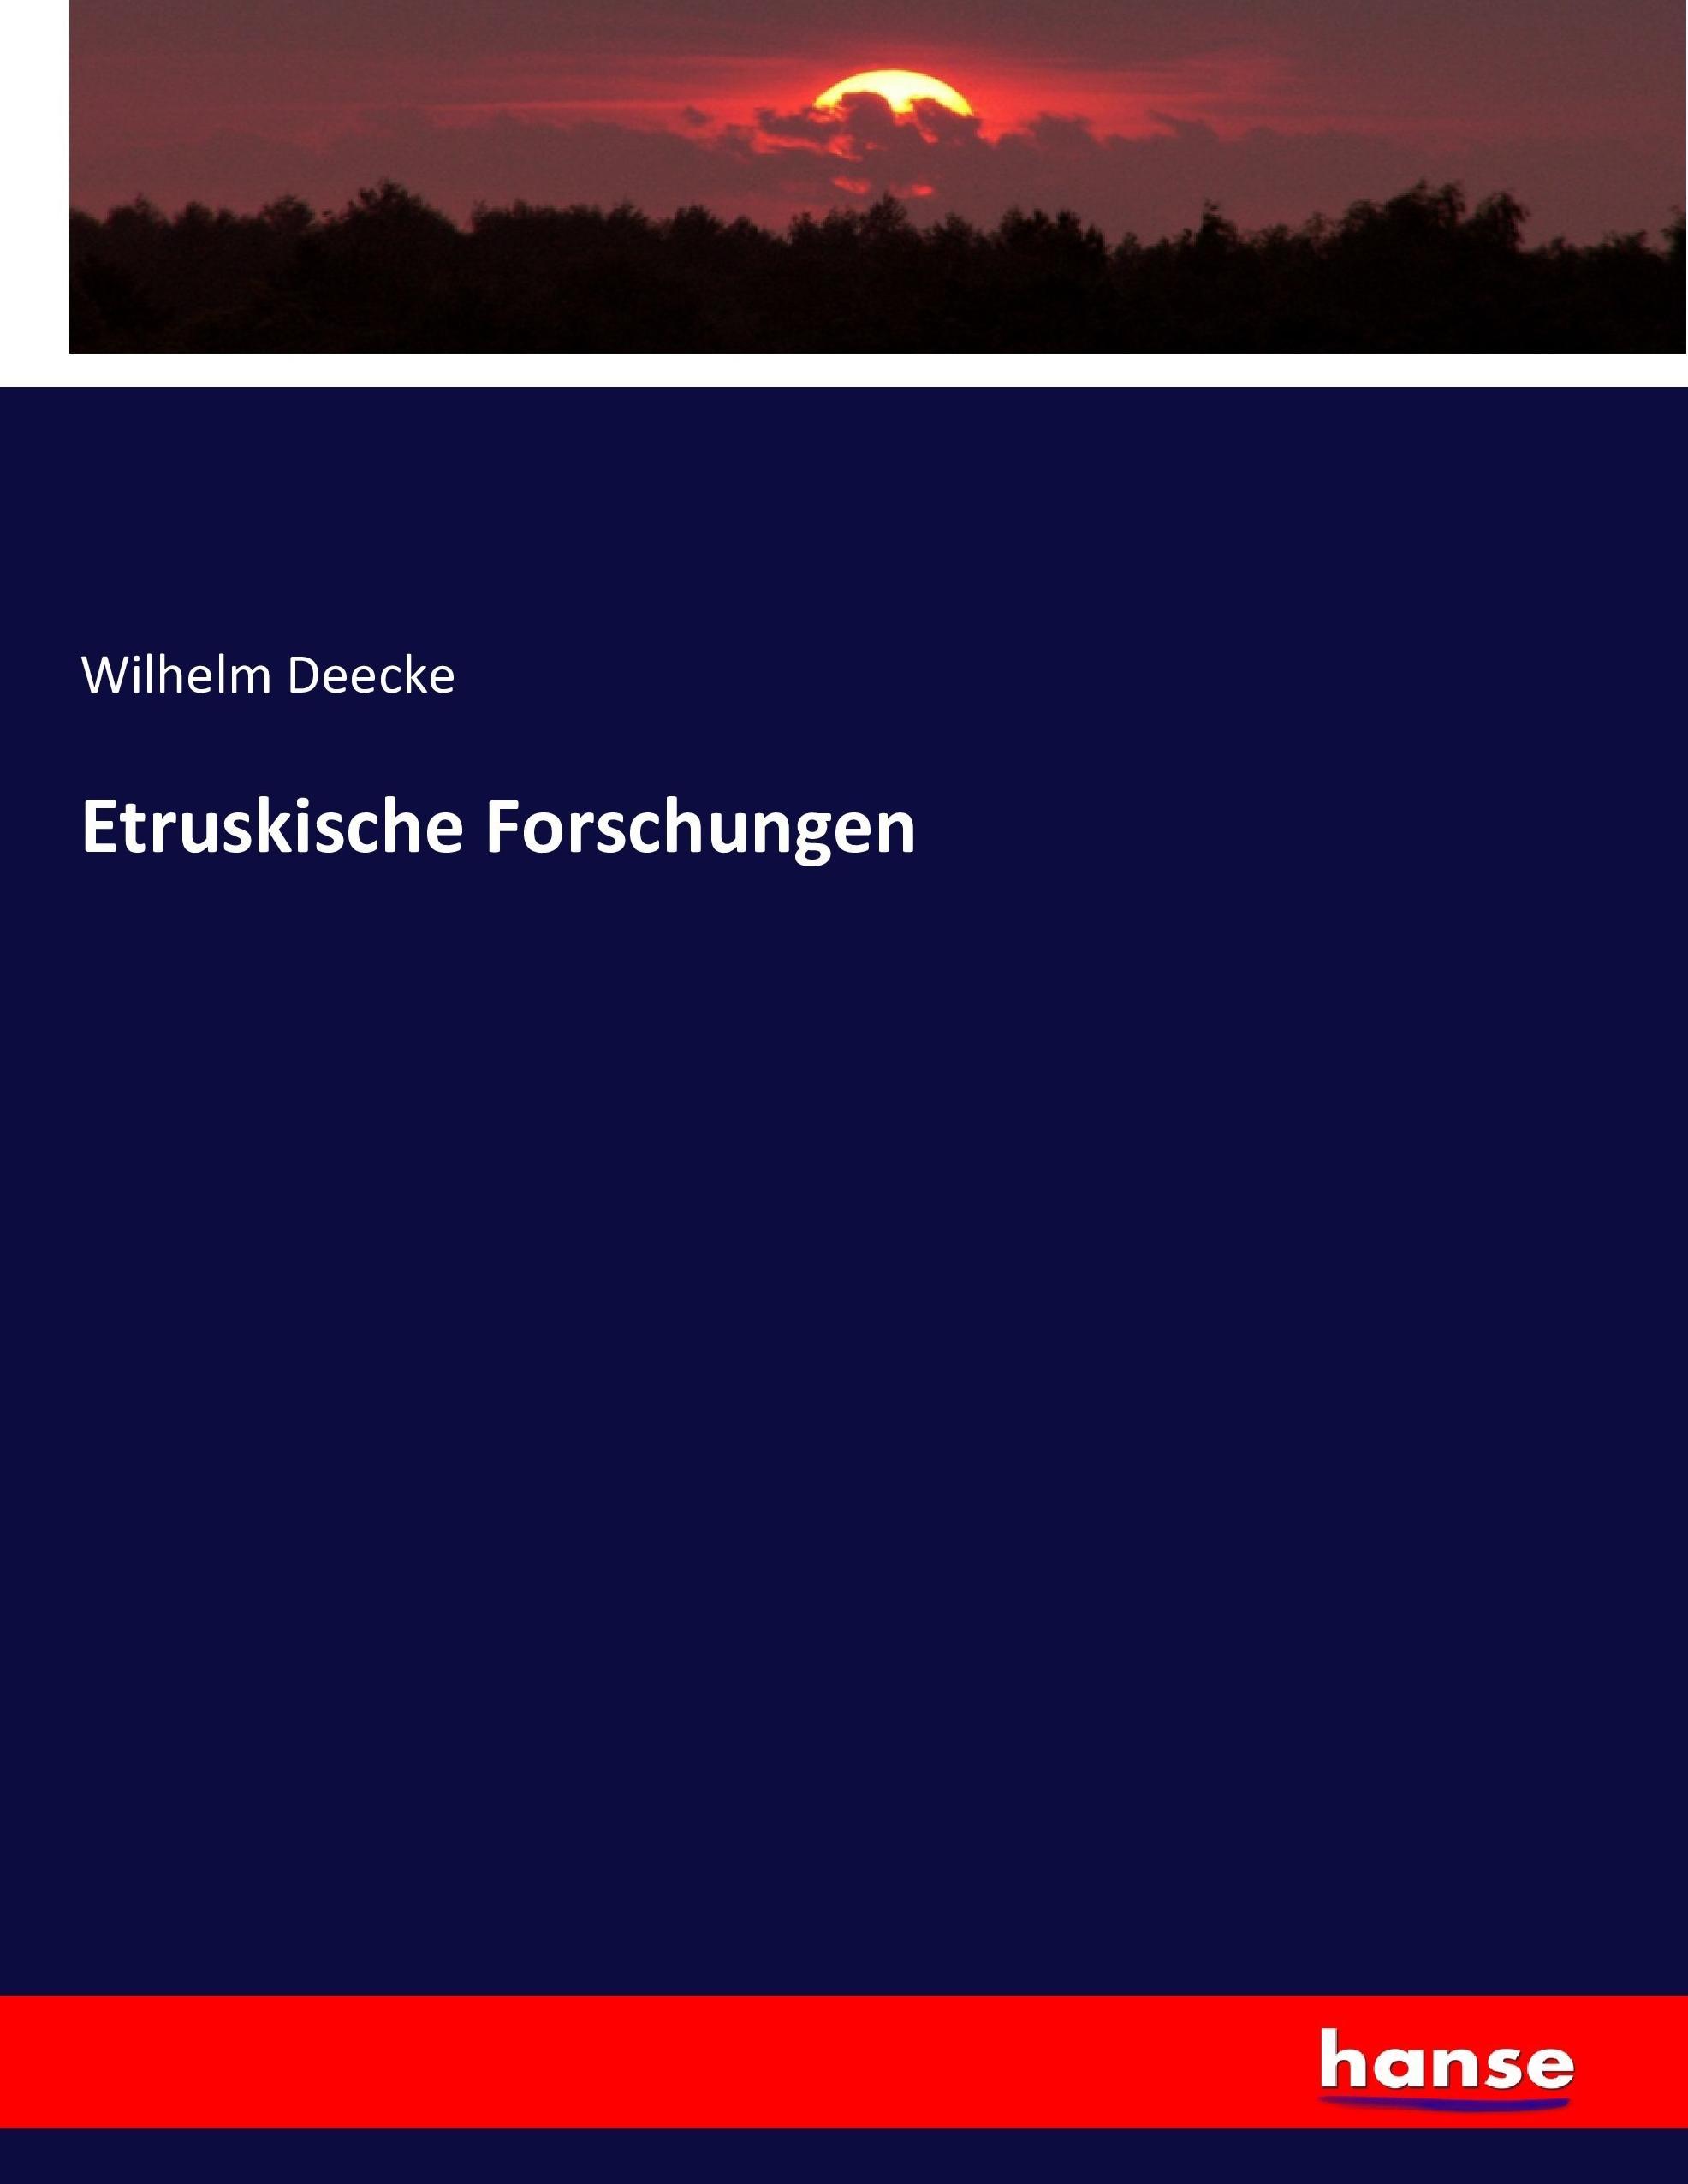 Etruskische Forschungen - Deecke, Wilhelm